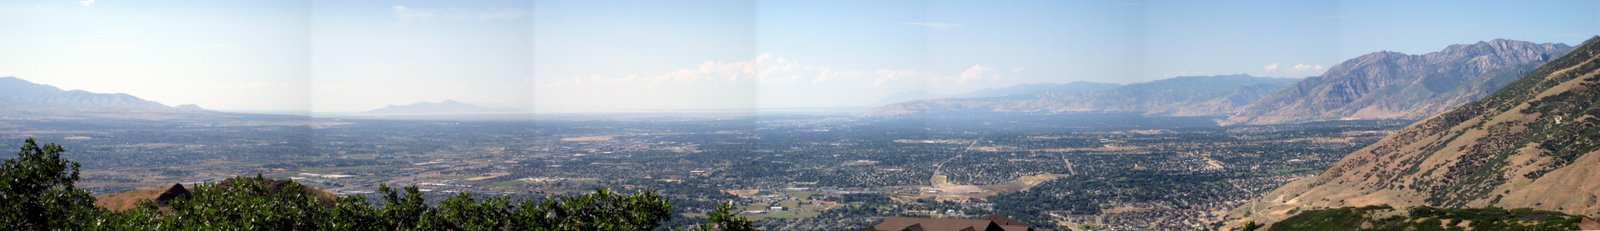 [Salt+Lake+Valley+Panorama+3+b.jpg]